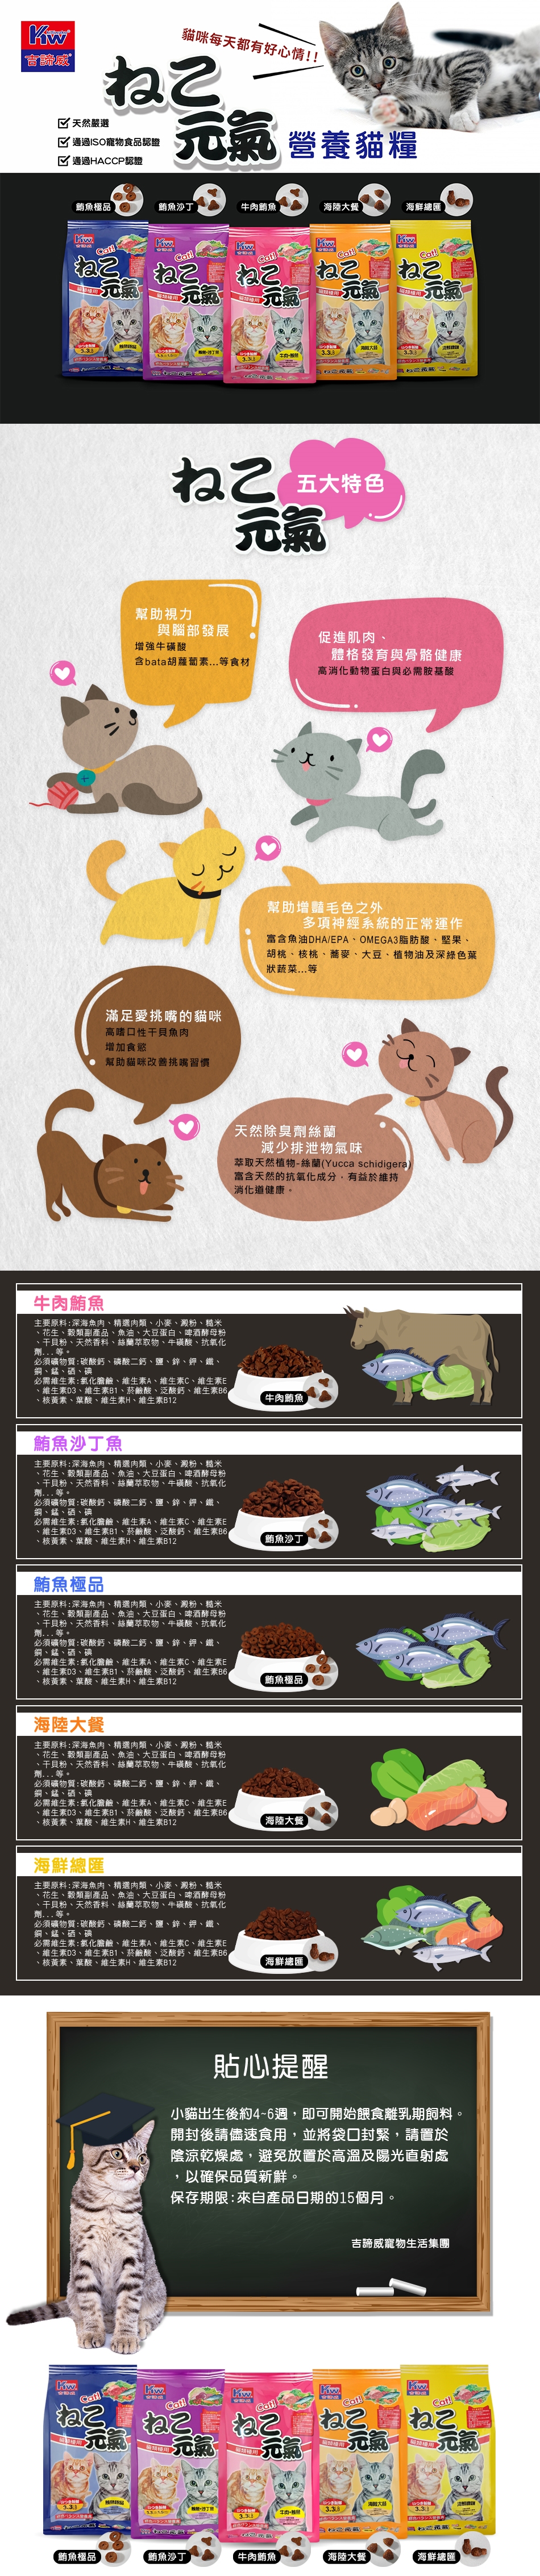 吉諦威, 元氣貓, 貓食, 鮪魚, 牛肉